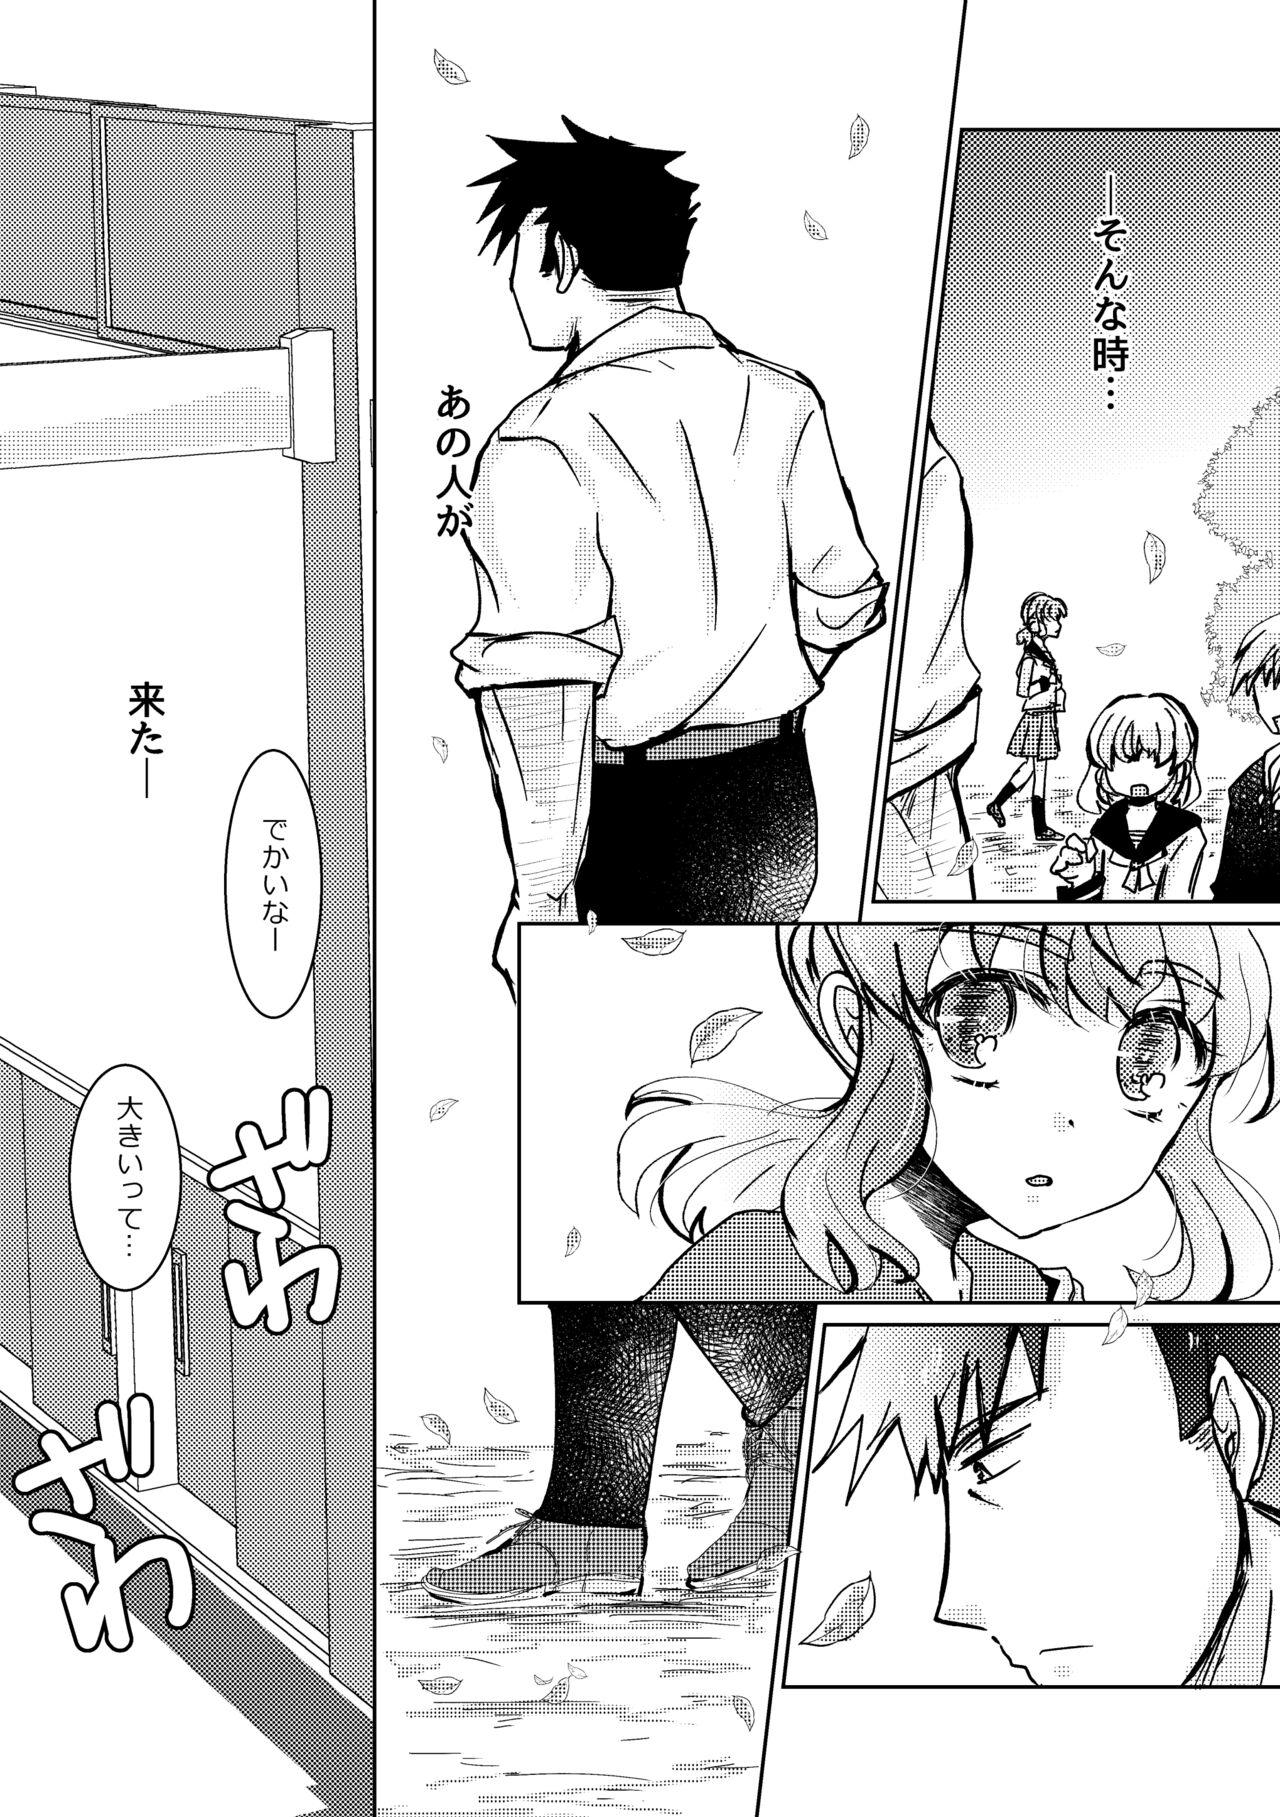 Naija Kareya Yoru no Hanaka Episode 3 Stroking - Page 4